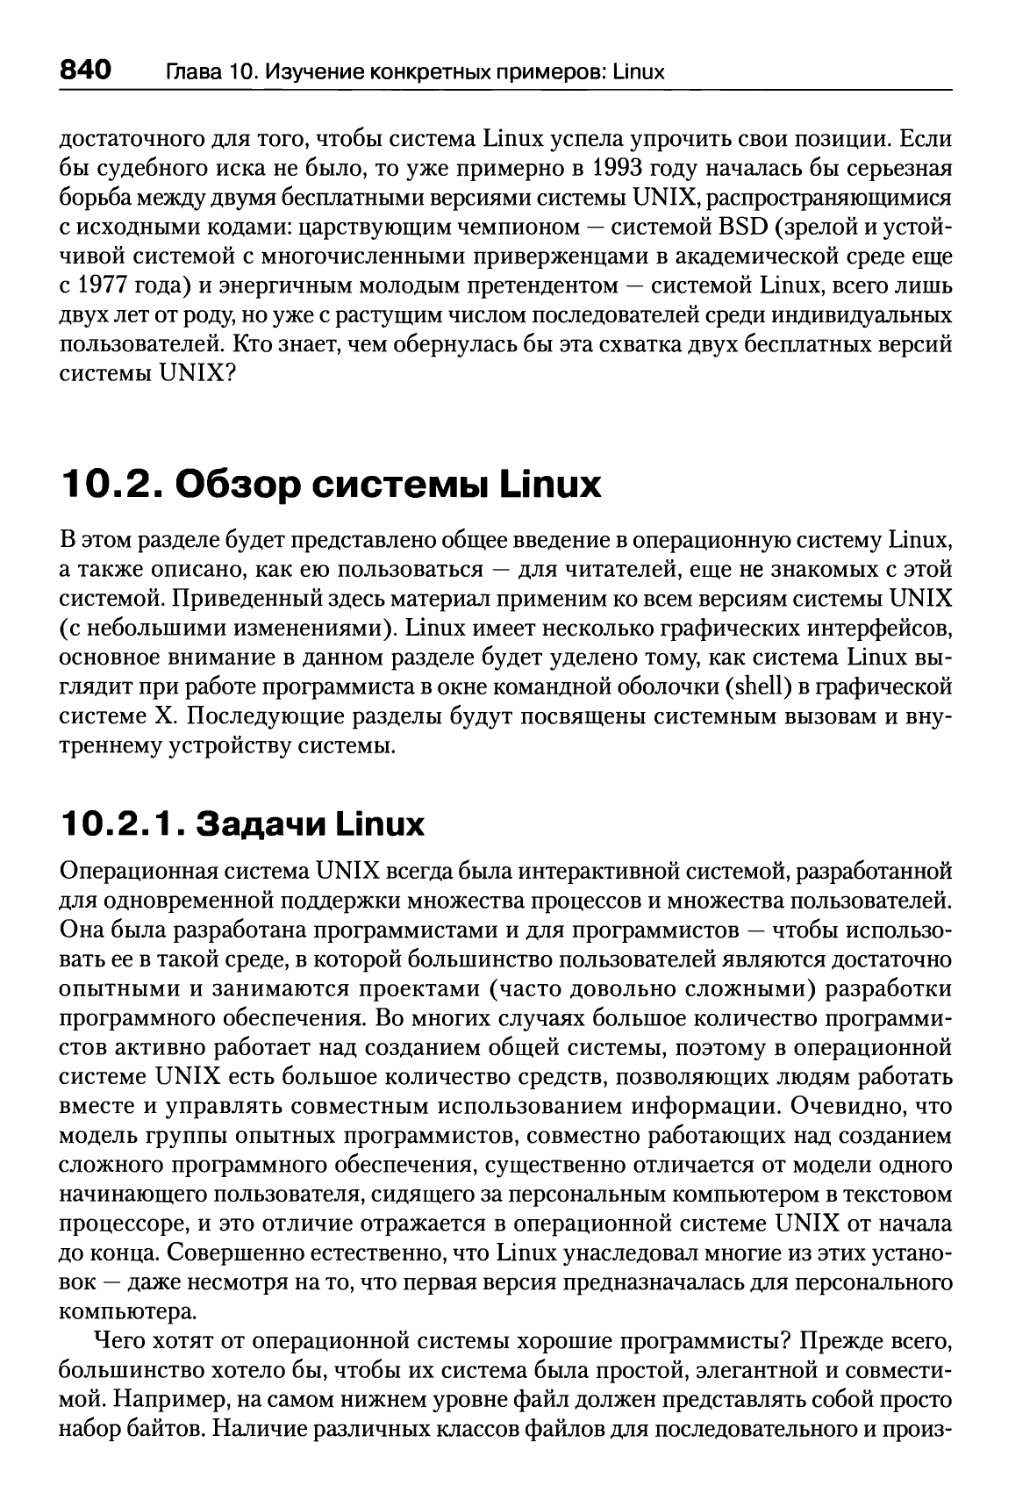 10.2. Обзор системы Linux